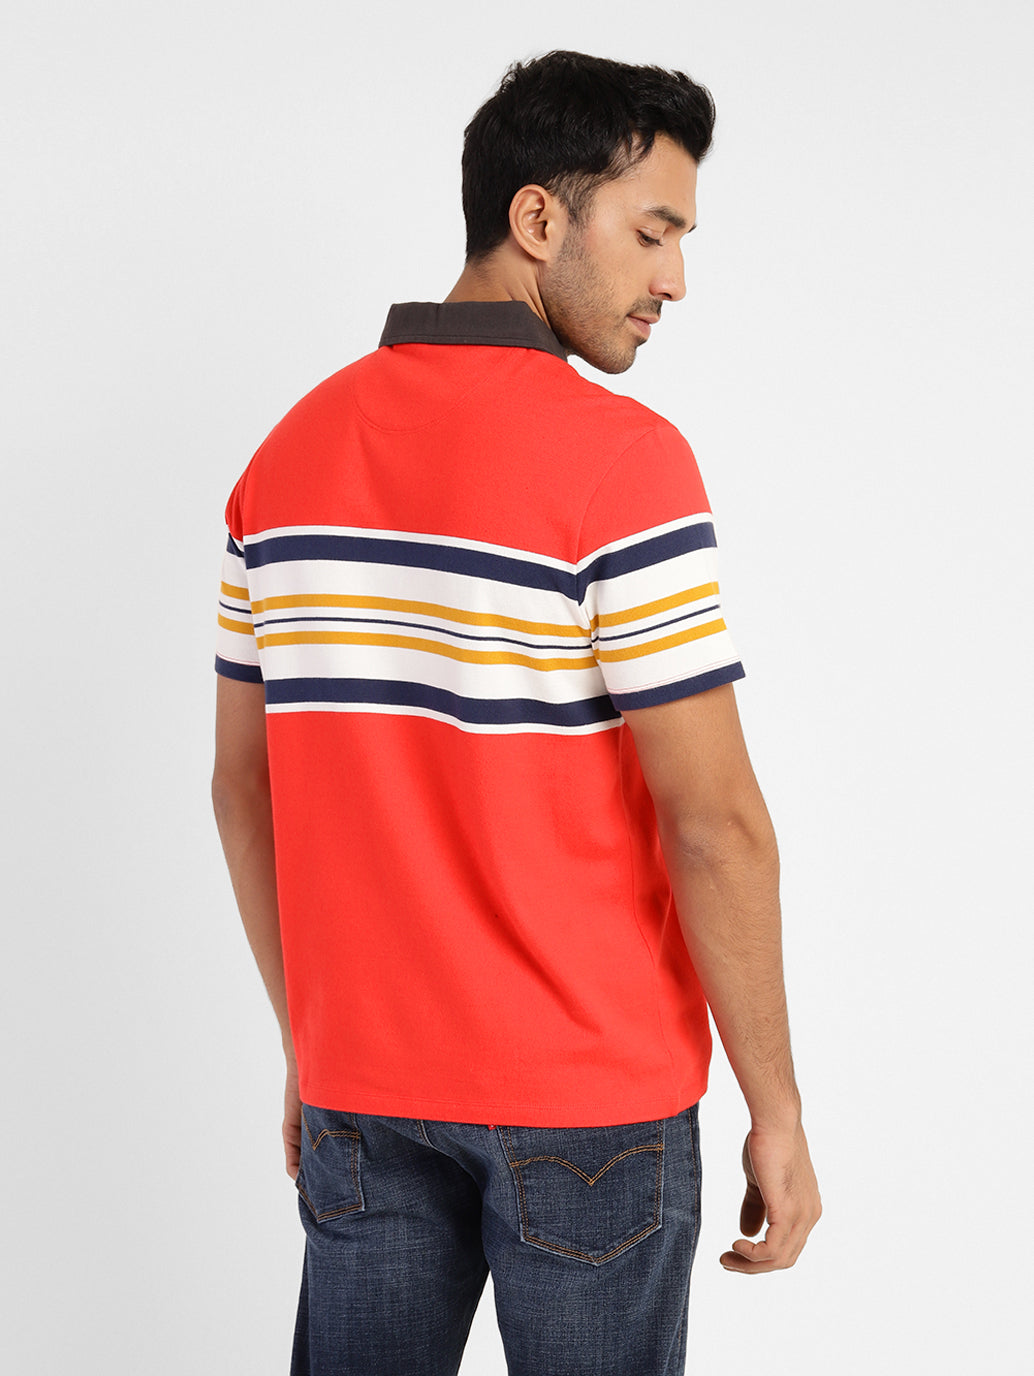 Men's Striped Polo T-shirt